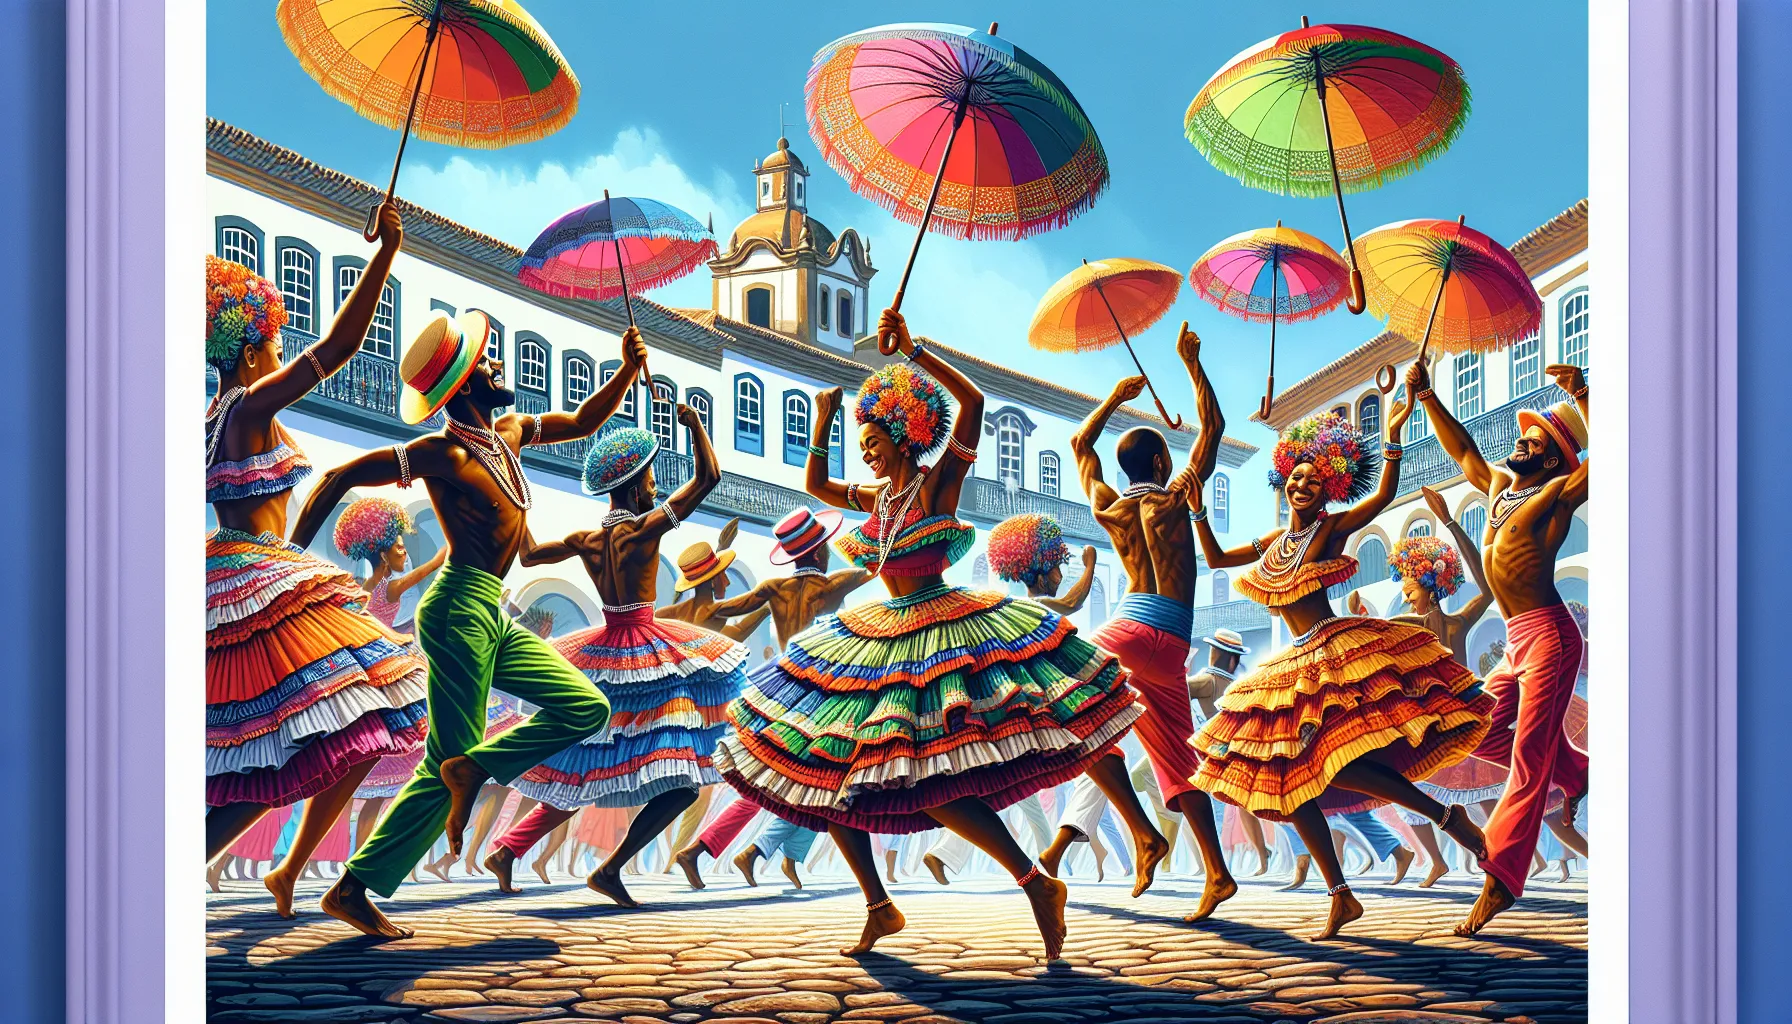 O frevo é uma dança e um gênero musical típico do carnaval de Pernambuco, no Nordeste do Brasil. Sua origem remonta ao final do século XIX, na cidade de Recife, e está intimamente ligada à cultura local.

O frevo surgiu como uma forma de expressão dos negros e dos trabalhadores da região, que encontraram na dança uma maneira de se manifestarem